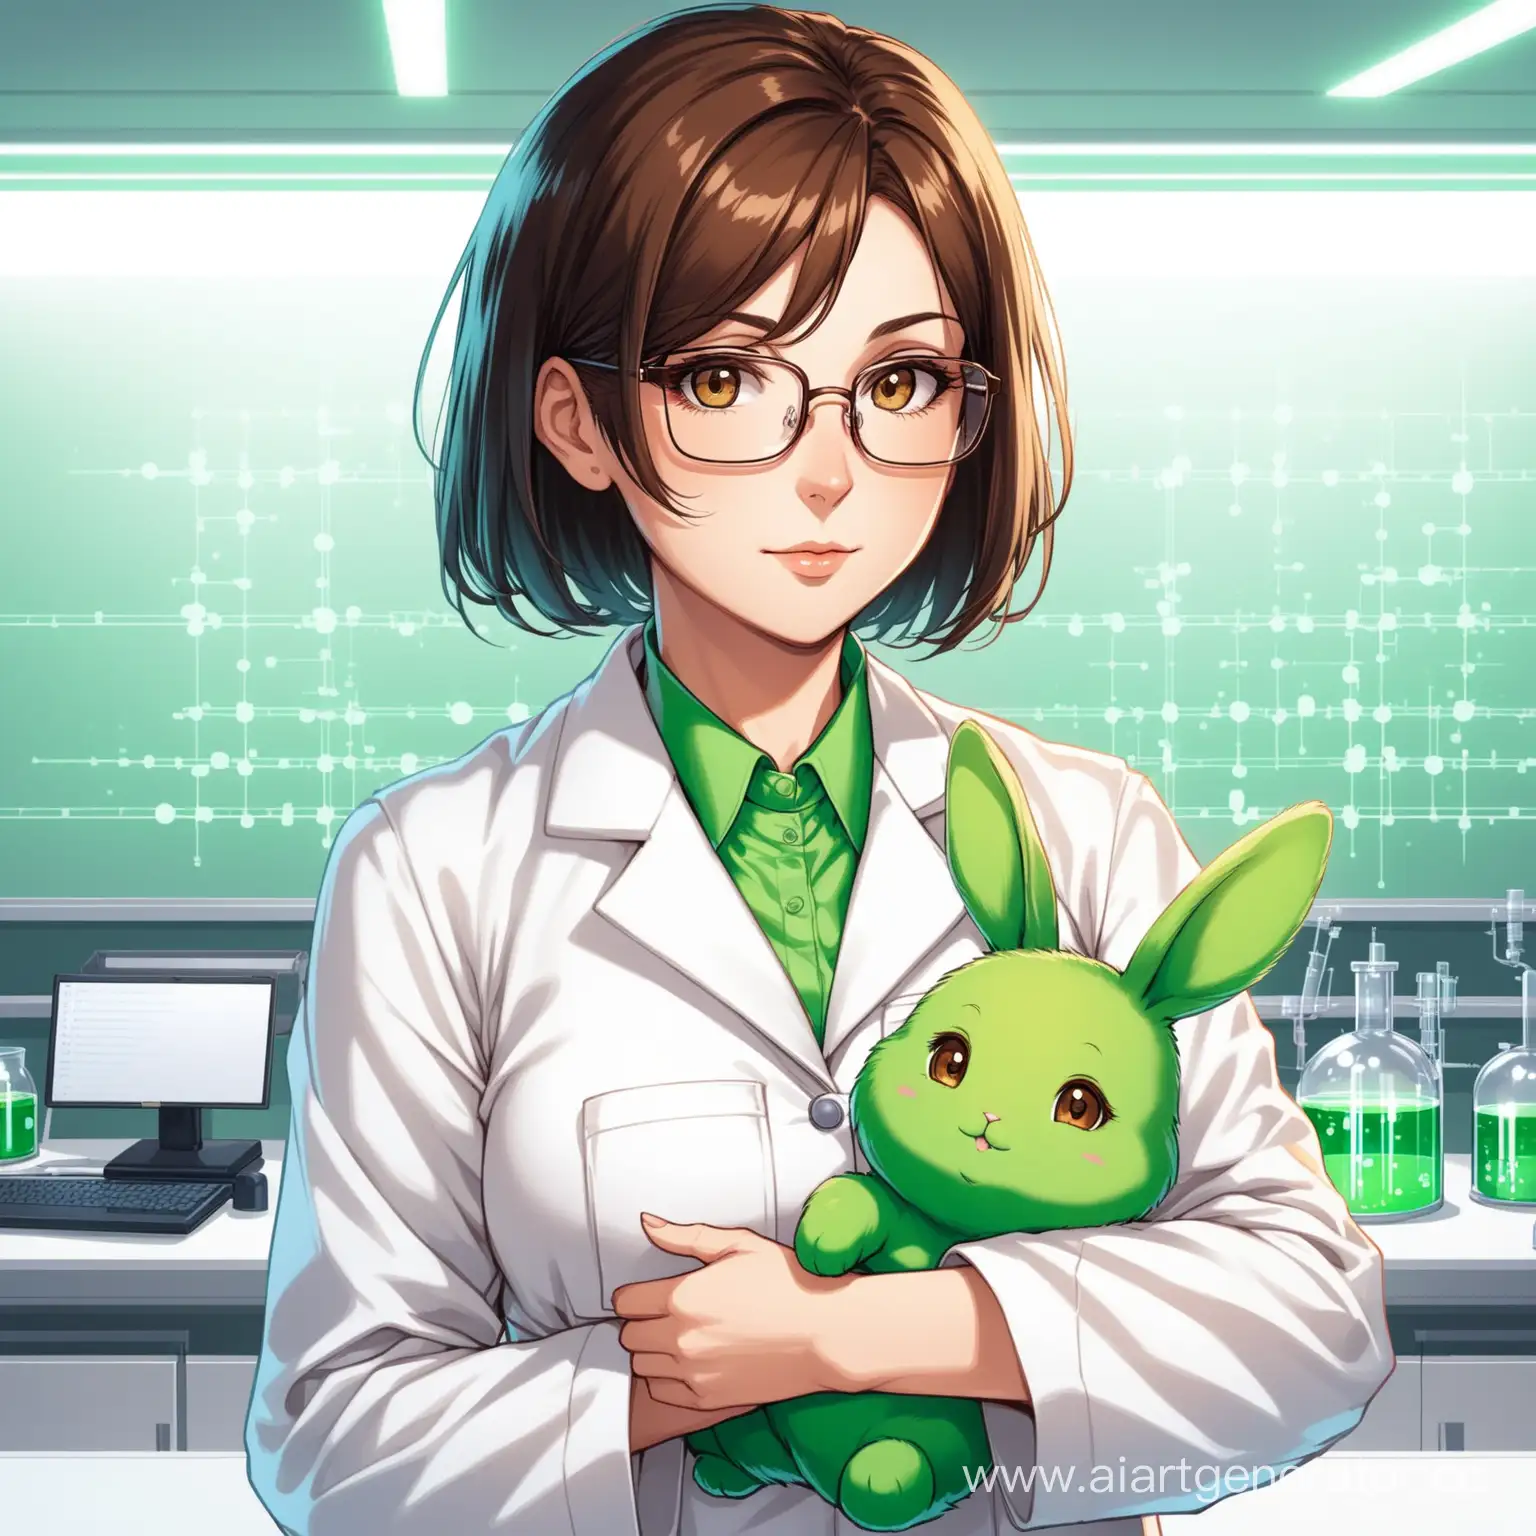 женщина-учёный, лет 40, в белом халате и очках, симпатичная шатенка с короткой стрижкой и большими карими глазами, держит на руках зелёного кролика